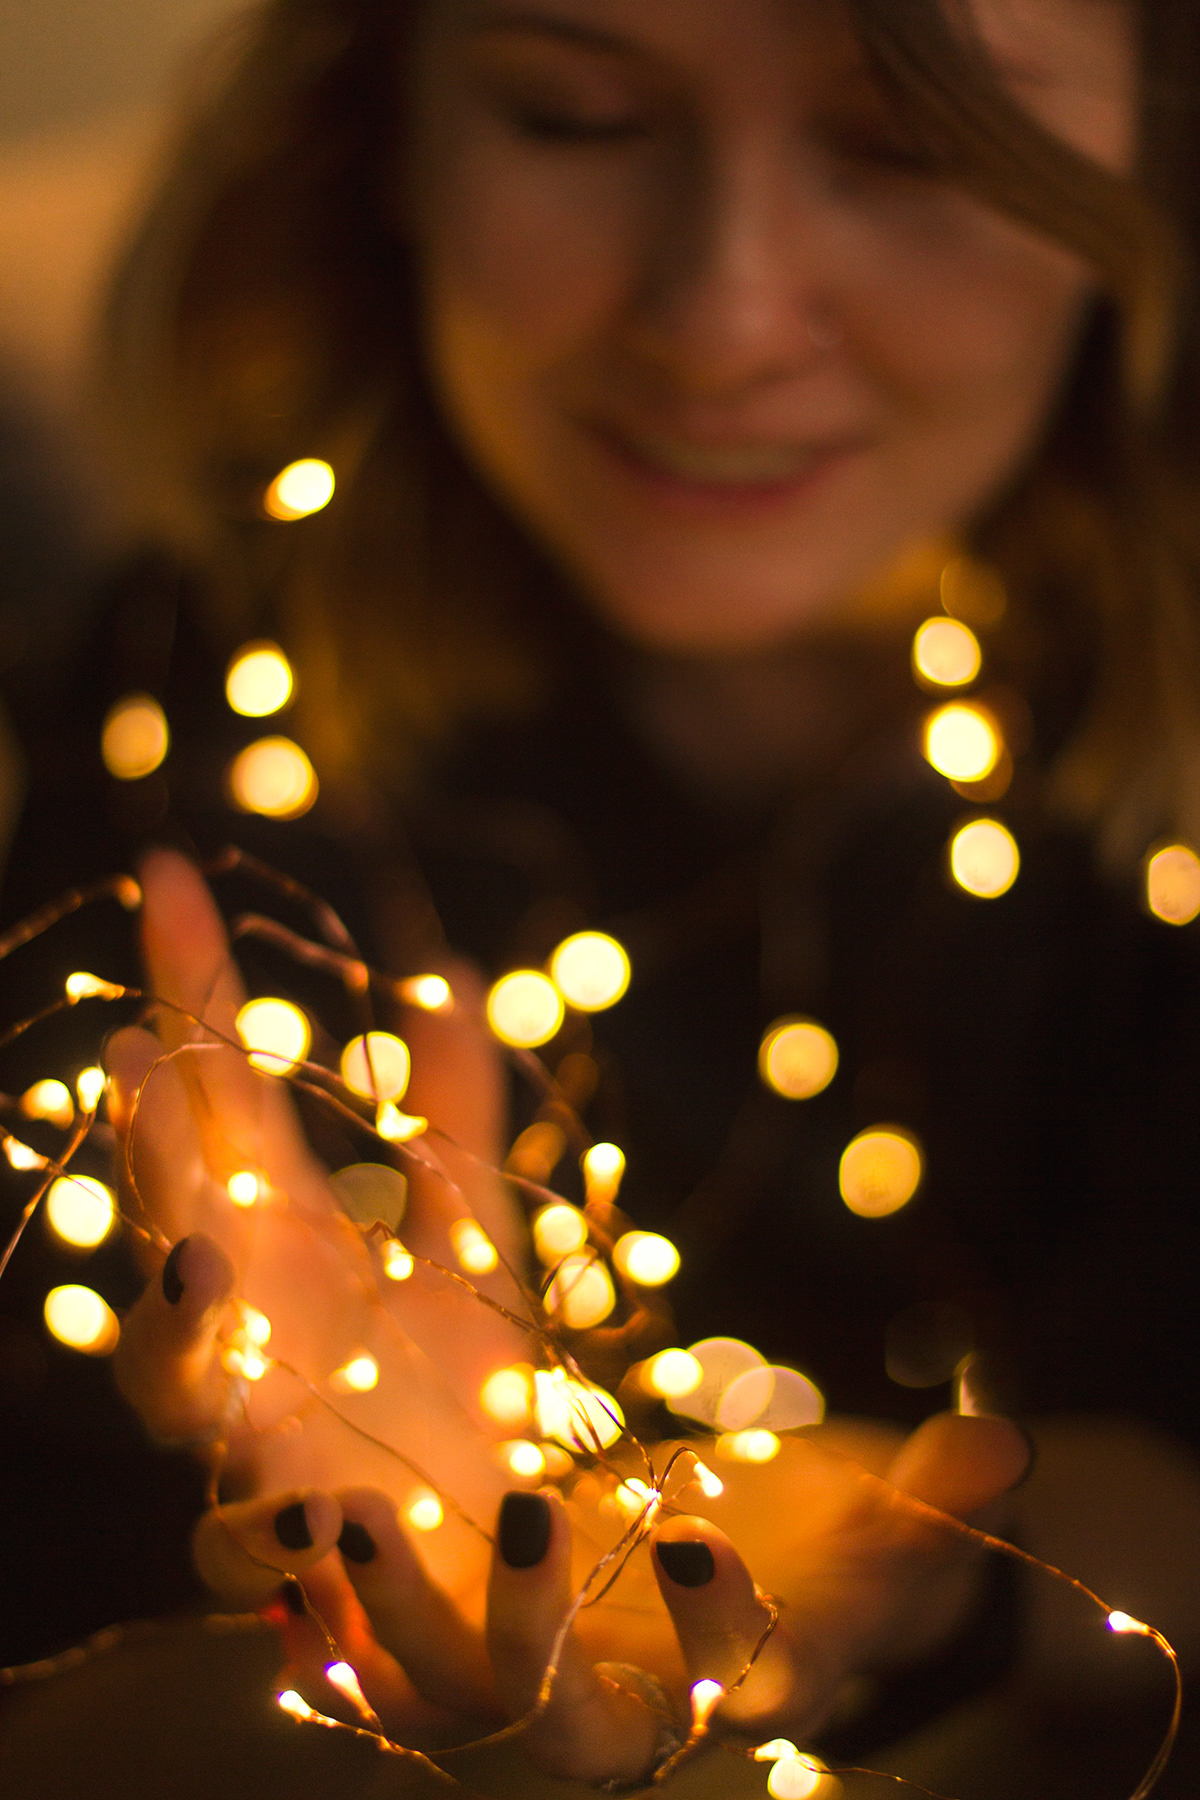 Christmas light girl smile portrait merry hands lights Canon 60D 50mm